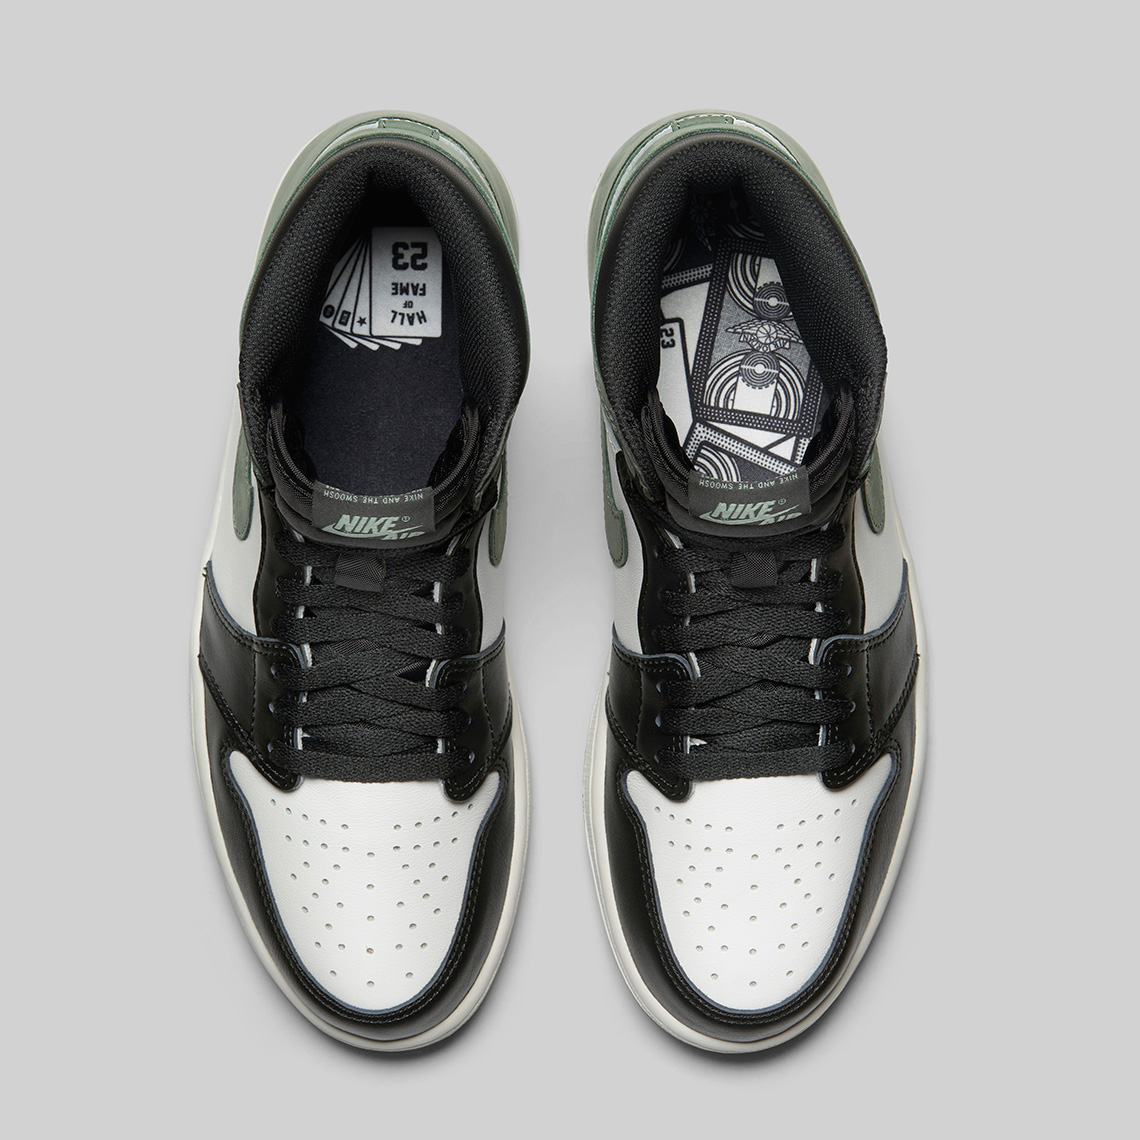 Air Jordan 1 Clay Green - Release Date | SneakerNews.com